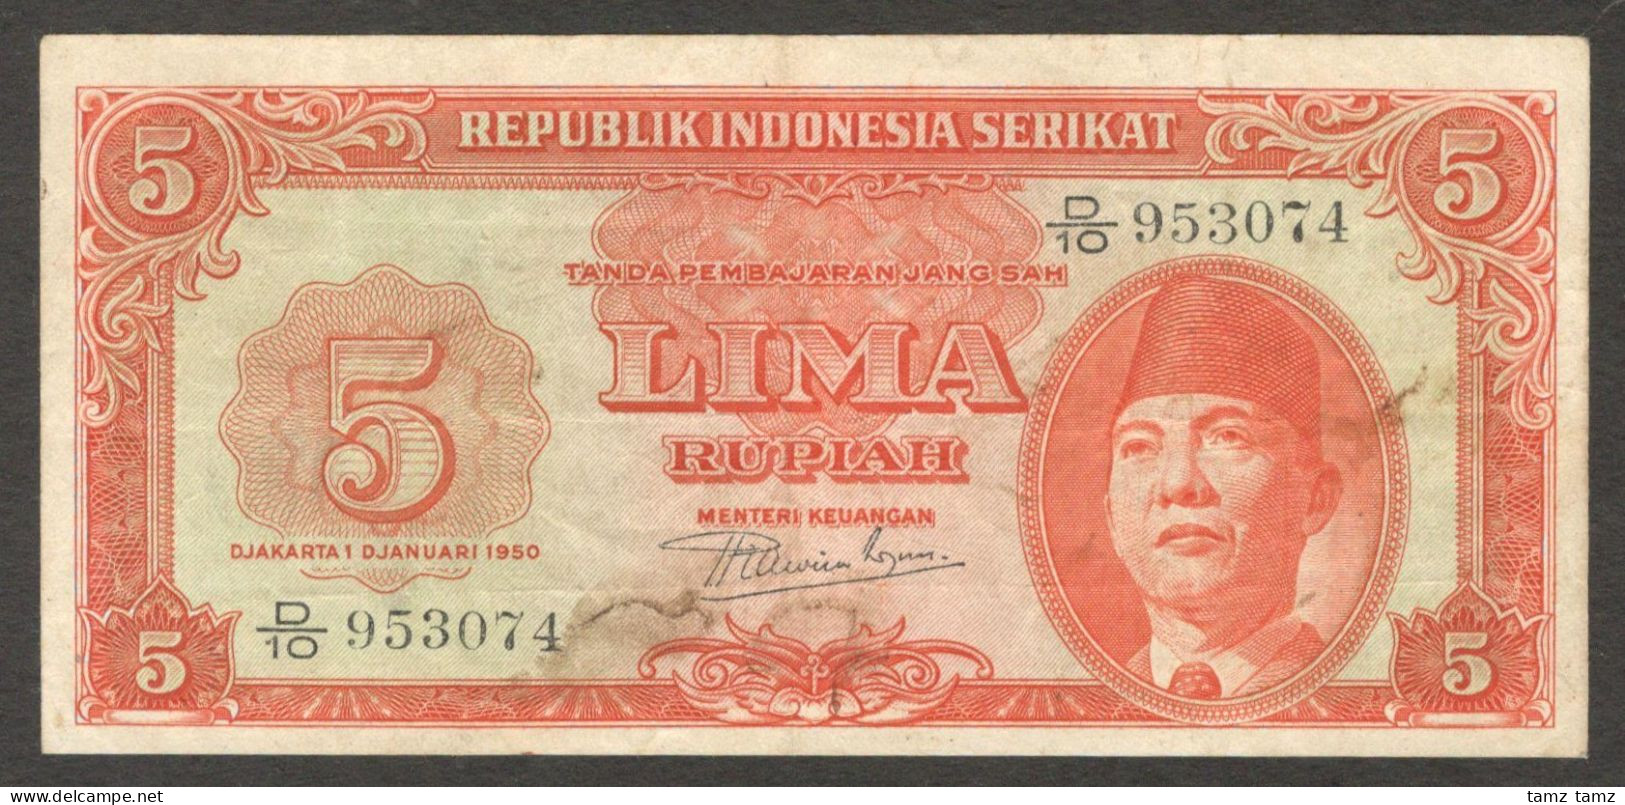 Republik Indonesia Serikat 5 Rupiah President Soekarno P-36 1950 VF - Indonesien